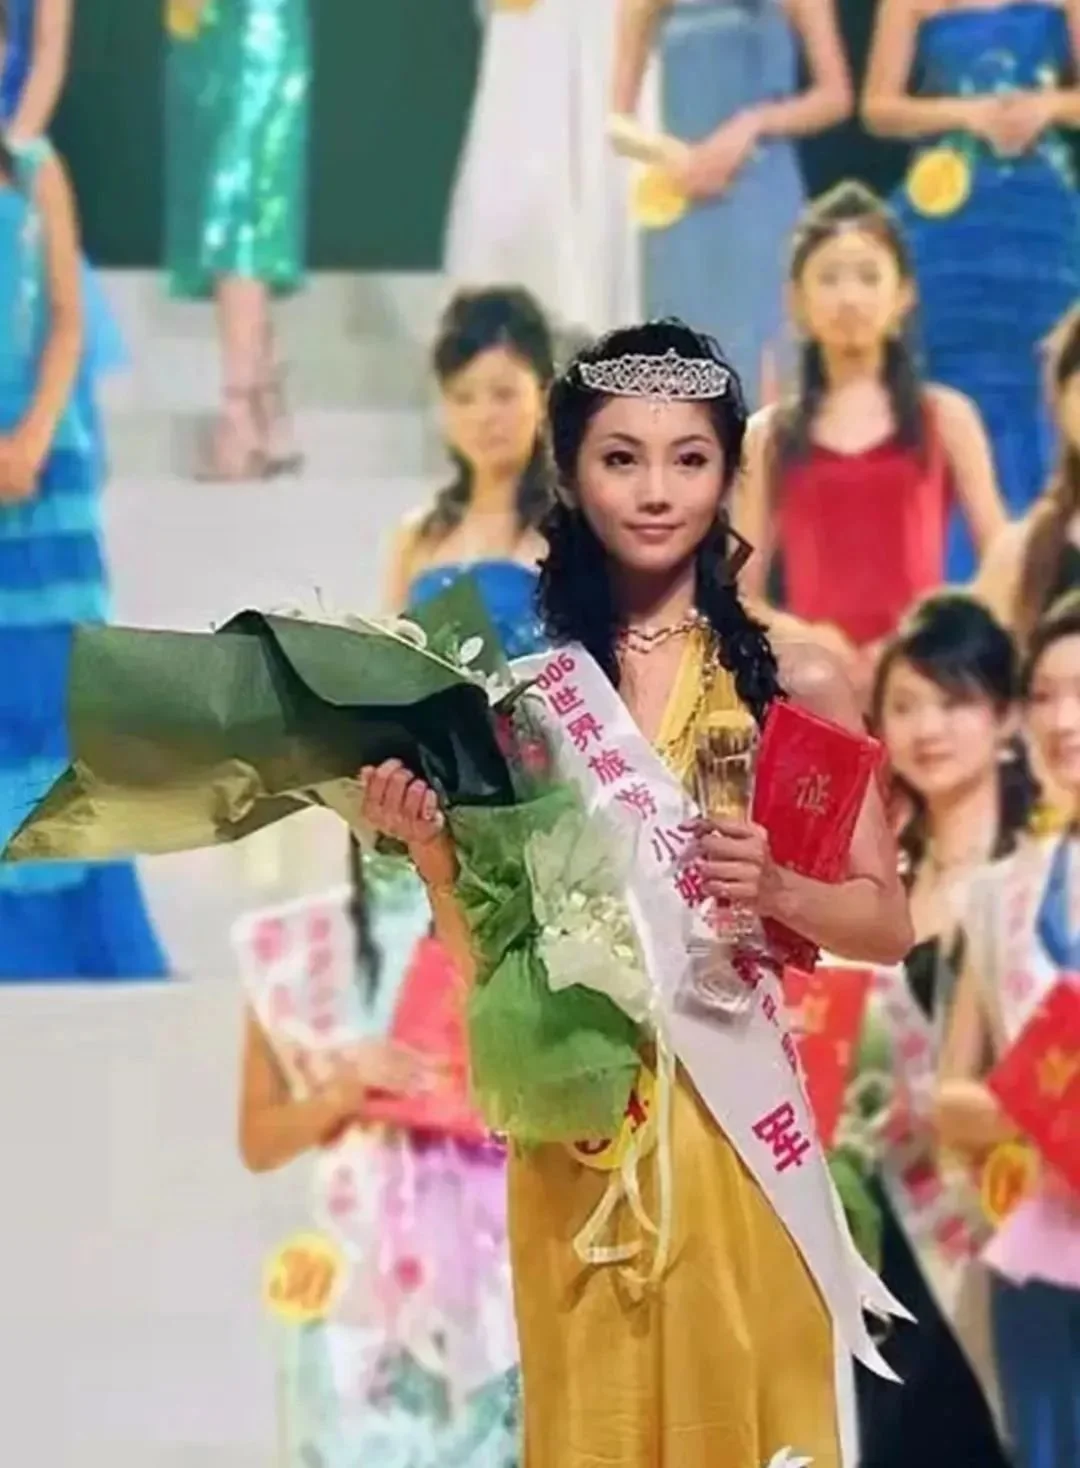 李雪珂参加世界旅游小姐比赛获得全国亚军